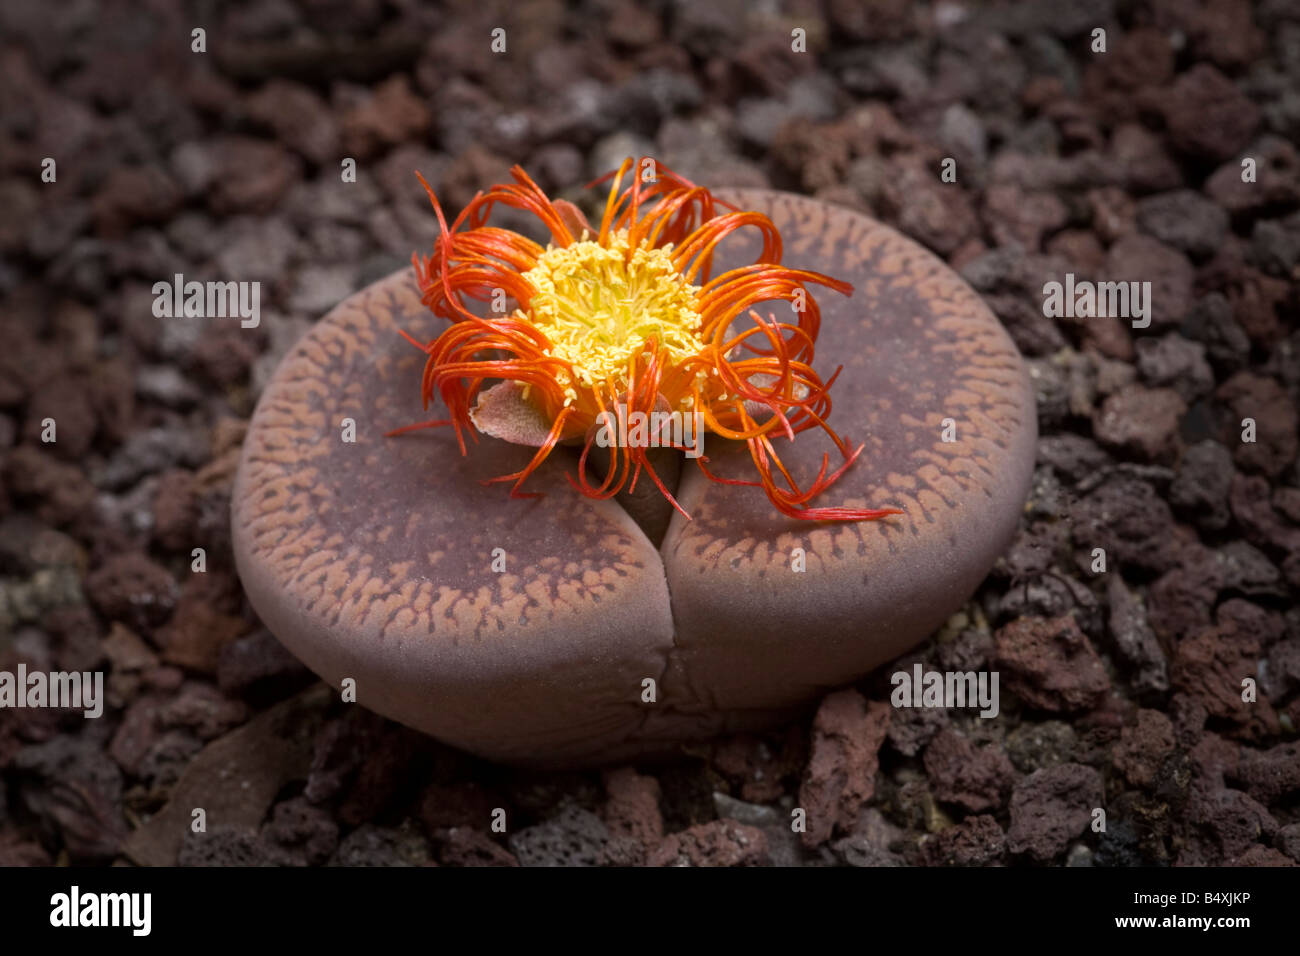 Una flor de piedra (Lithops aucampiae) en su floración tardía. Plante caillou (Lithops aucampiae) en fleur (fin de floraison). Foto de stock